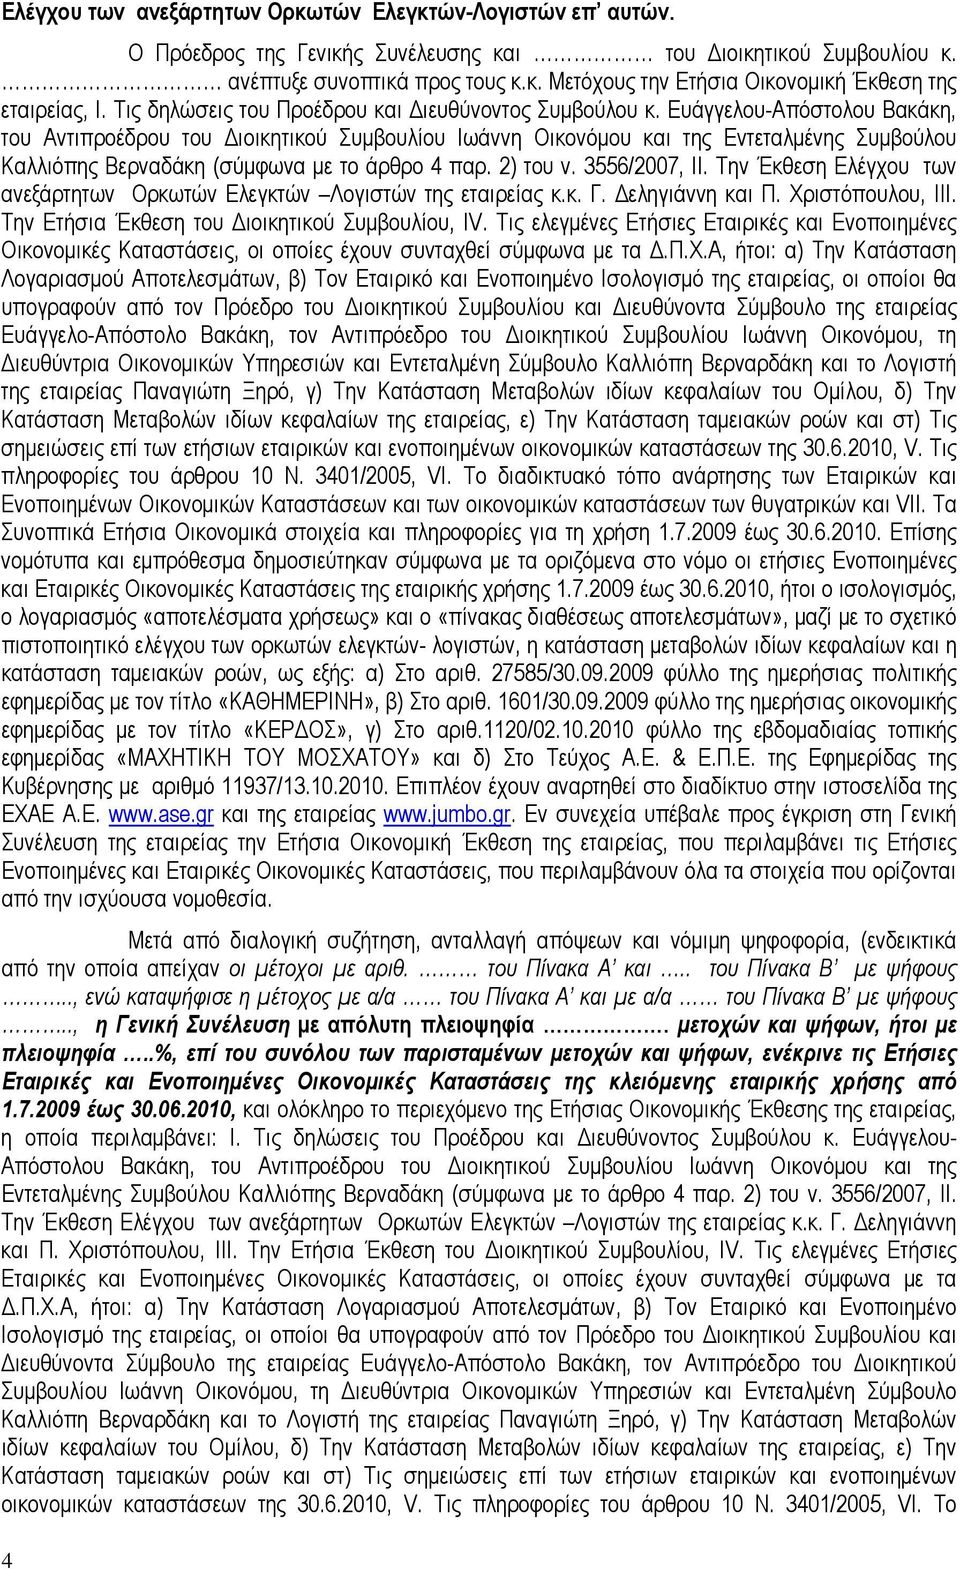 Ευάγγελου-Απόστολου Βακάκη, του Αντιπροέδρου του Διοικητικού Συμβουλίου Ιωάννη Οικονόμου και της Εντεταλμένης Συμβούλου Καλλιόπης Βερναδάκη (σύμφωνα με το άρθρο 4 παρ. 2) του ν. 3556/2007, ΙΙ.